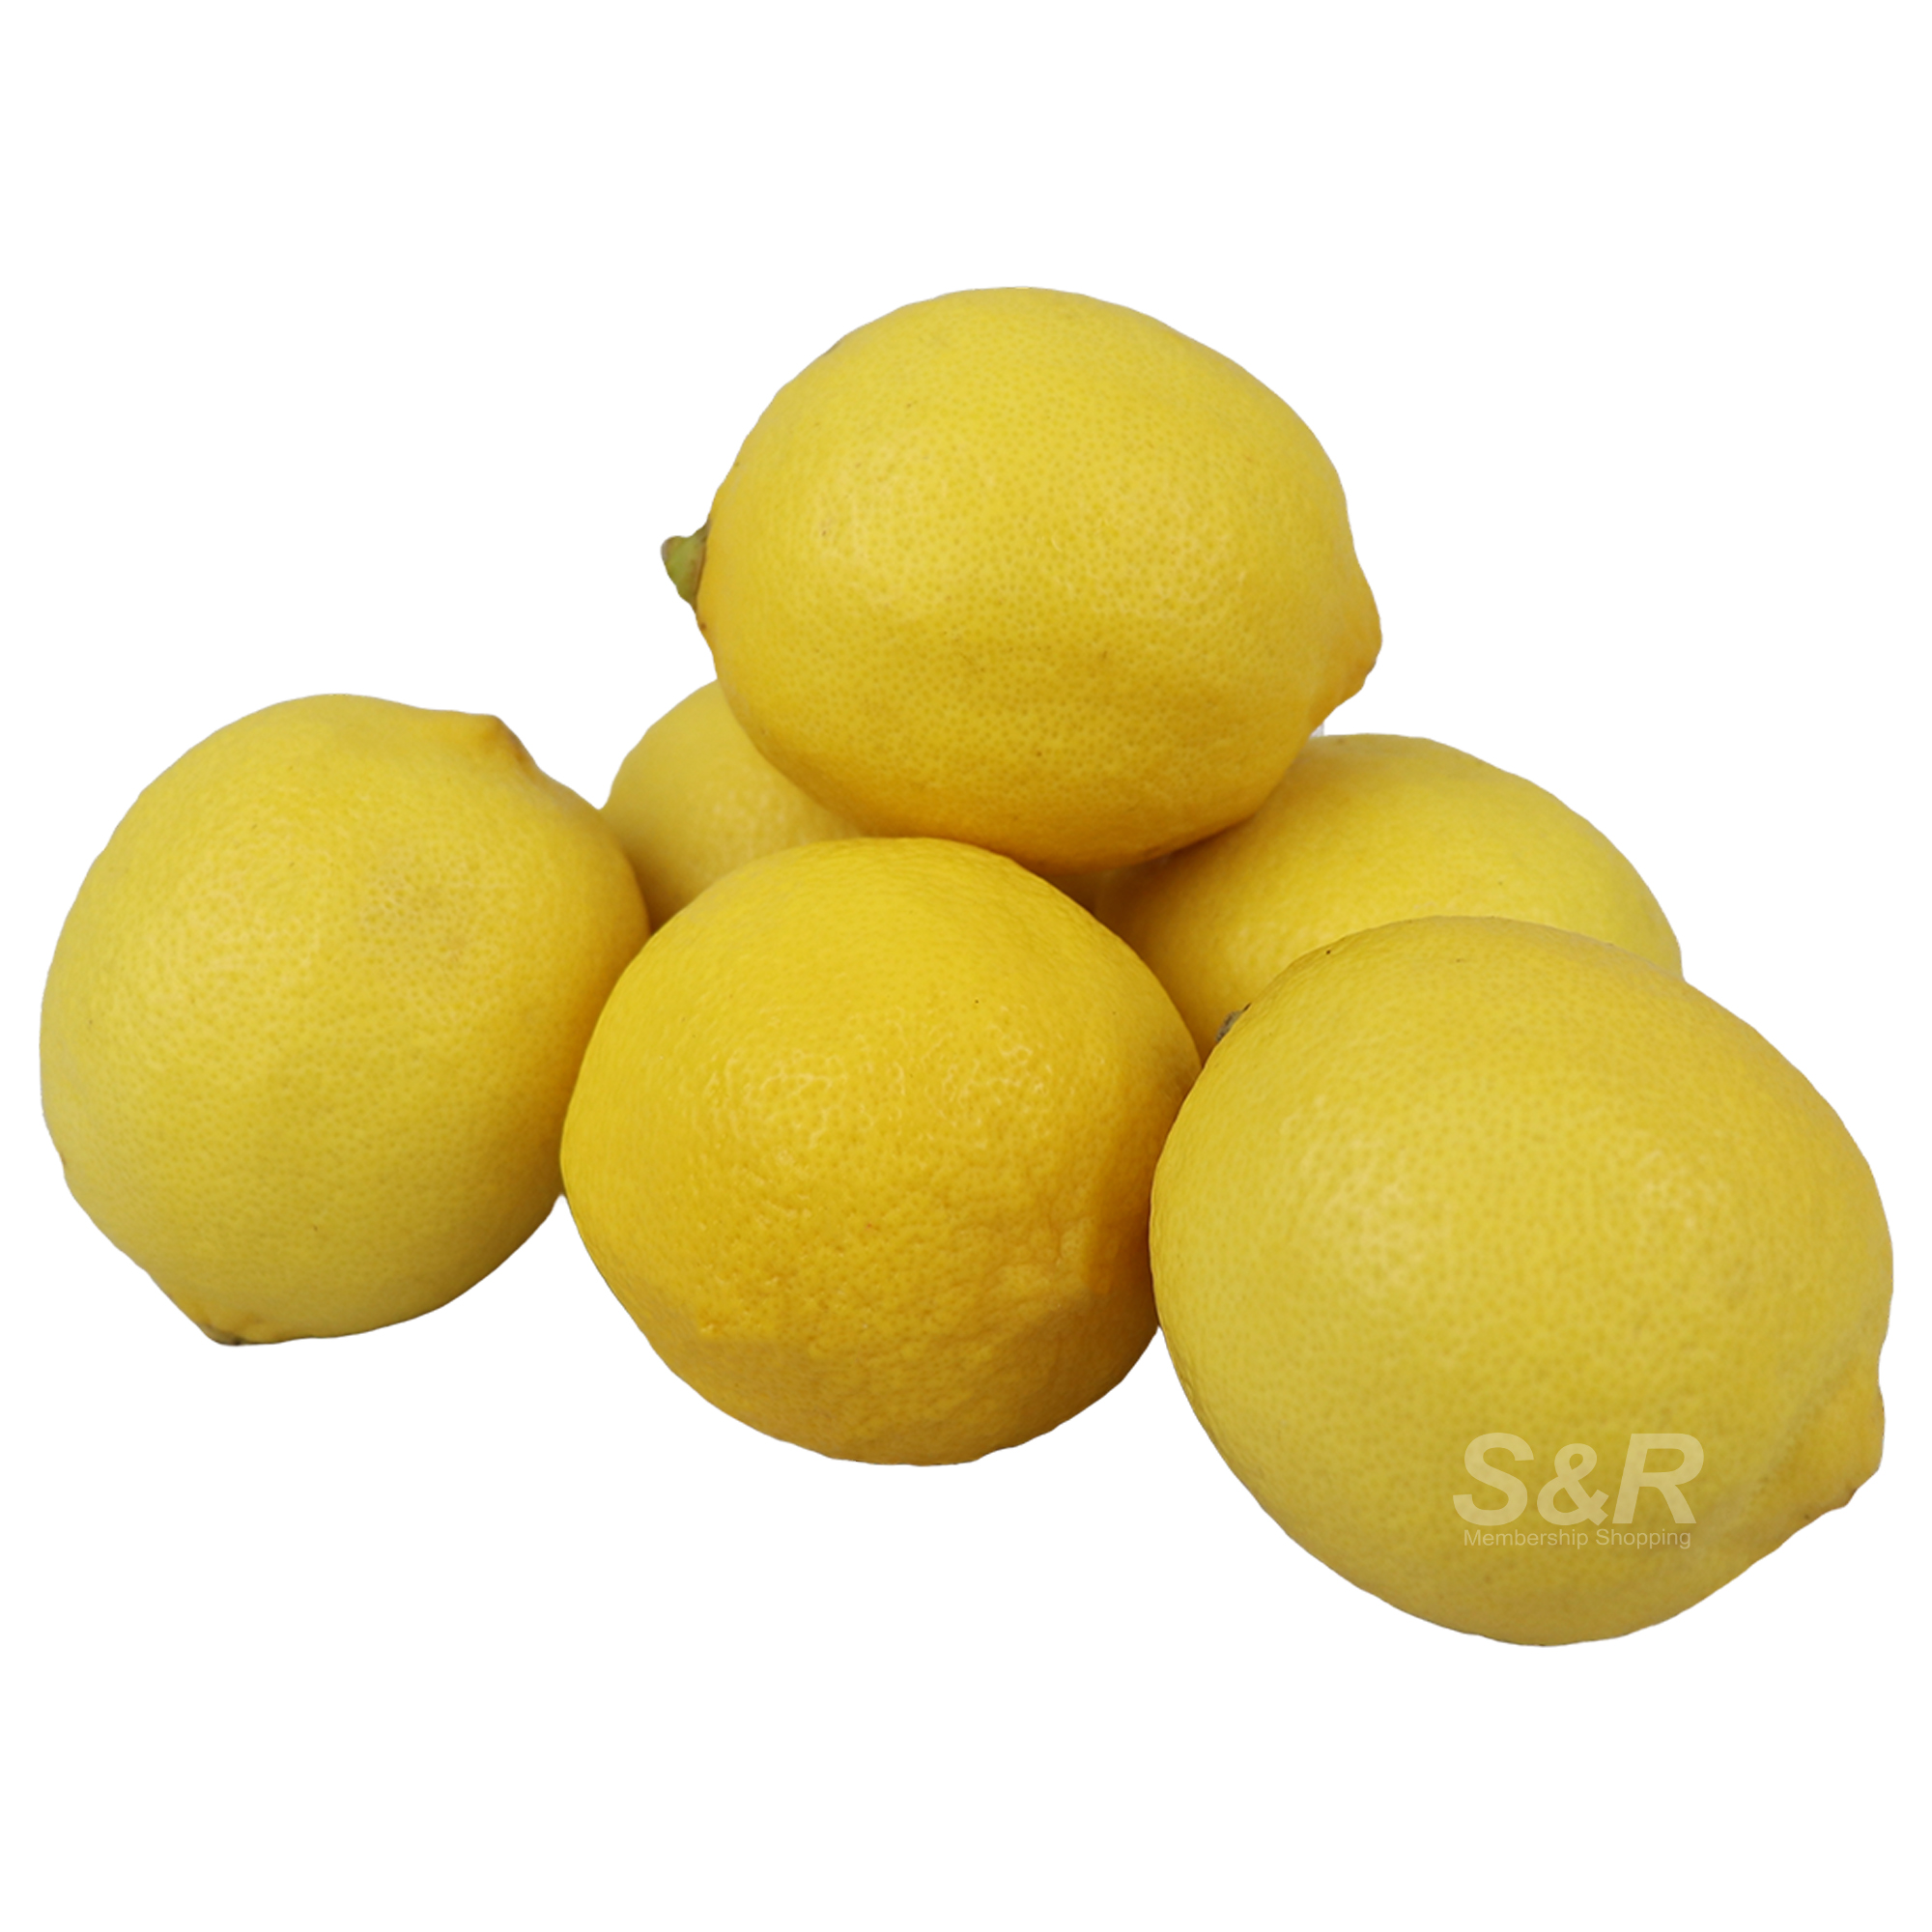 S&R Lemons 6pcs